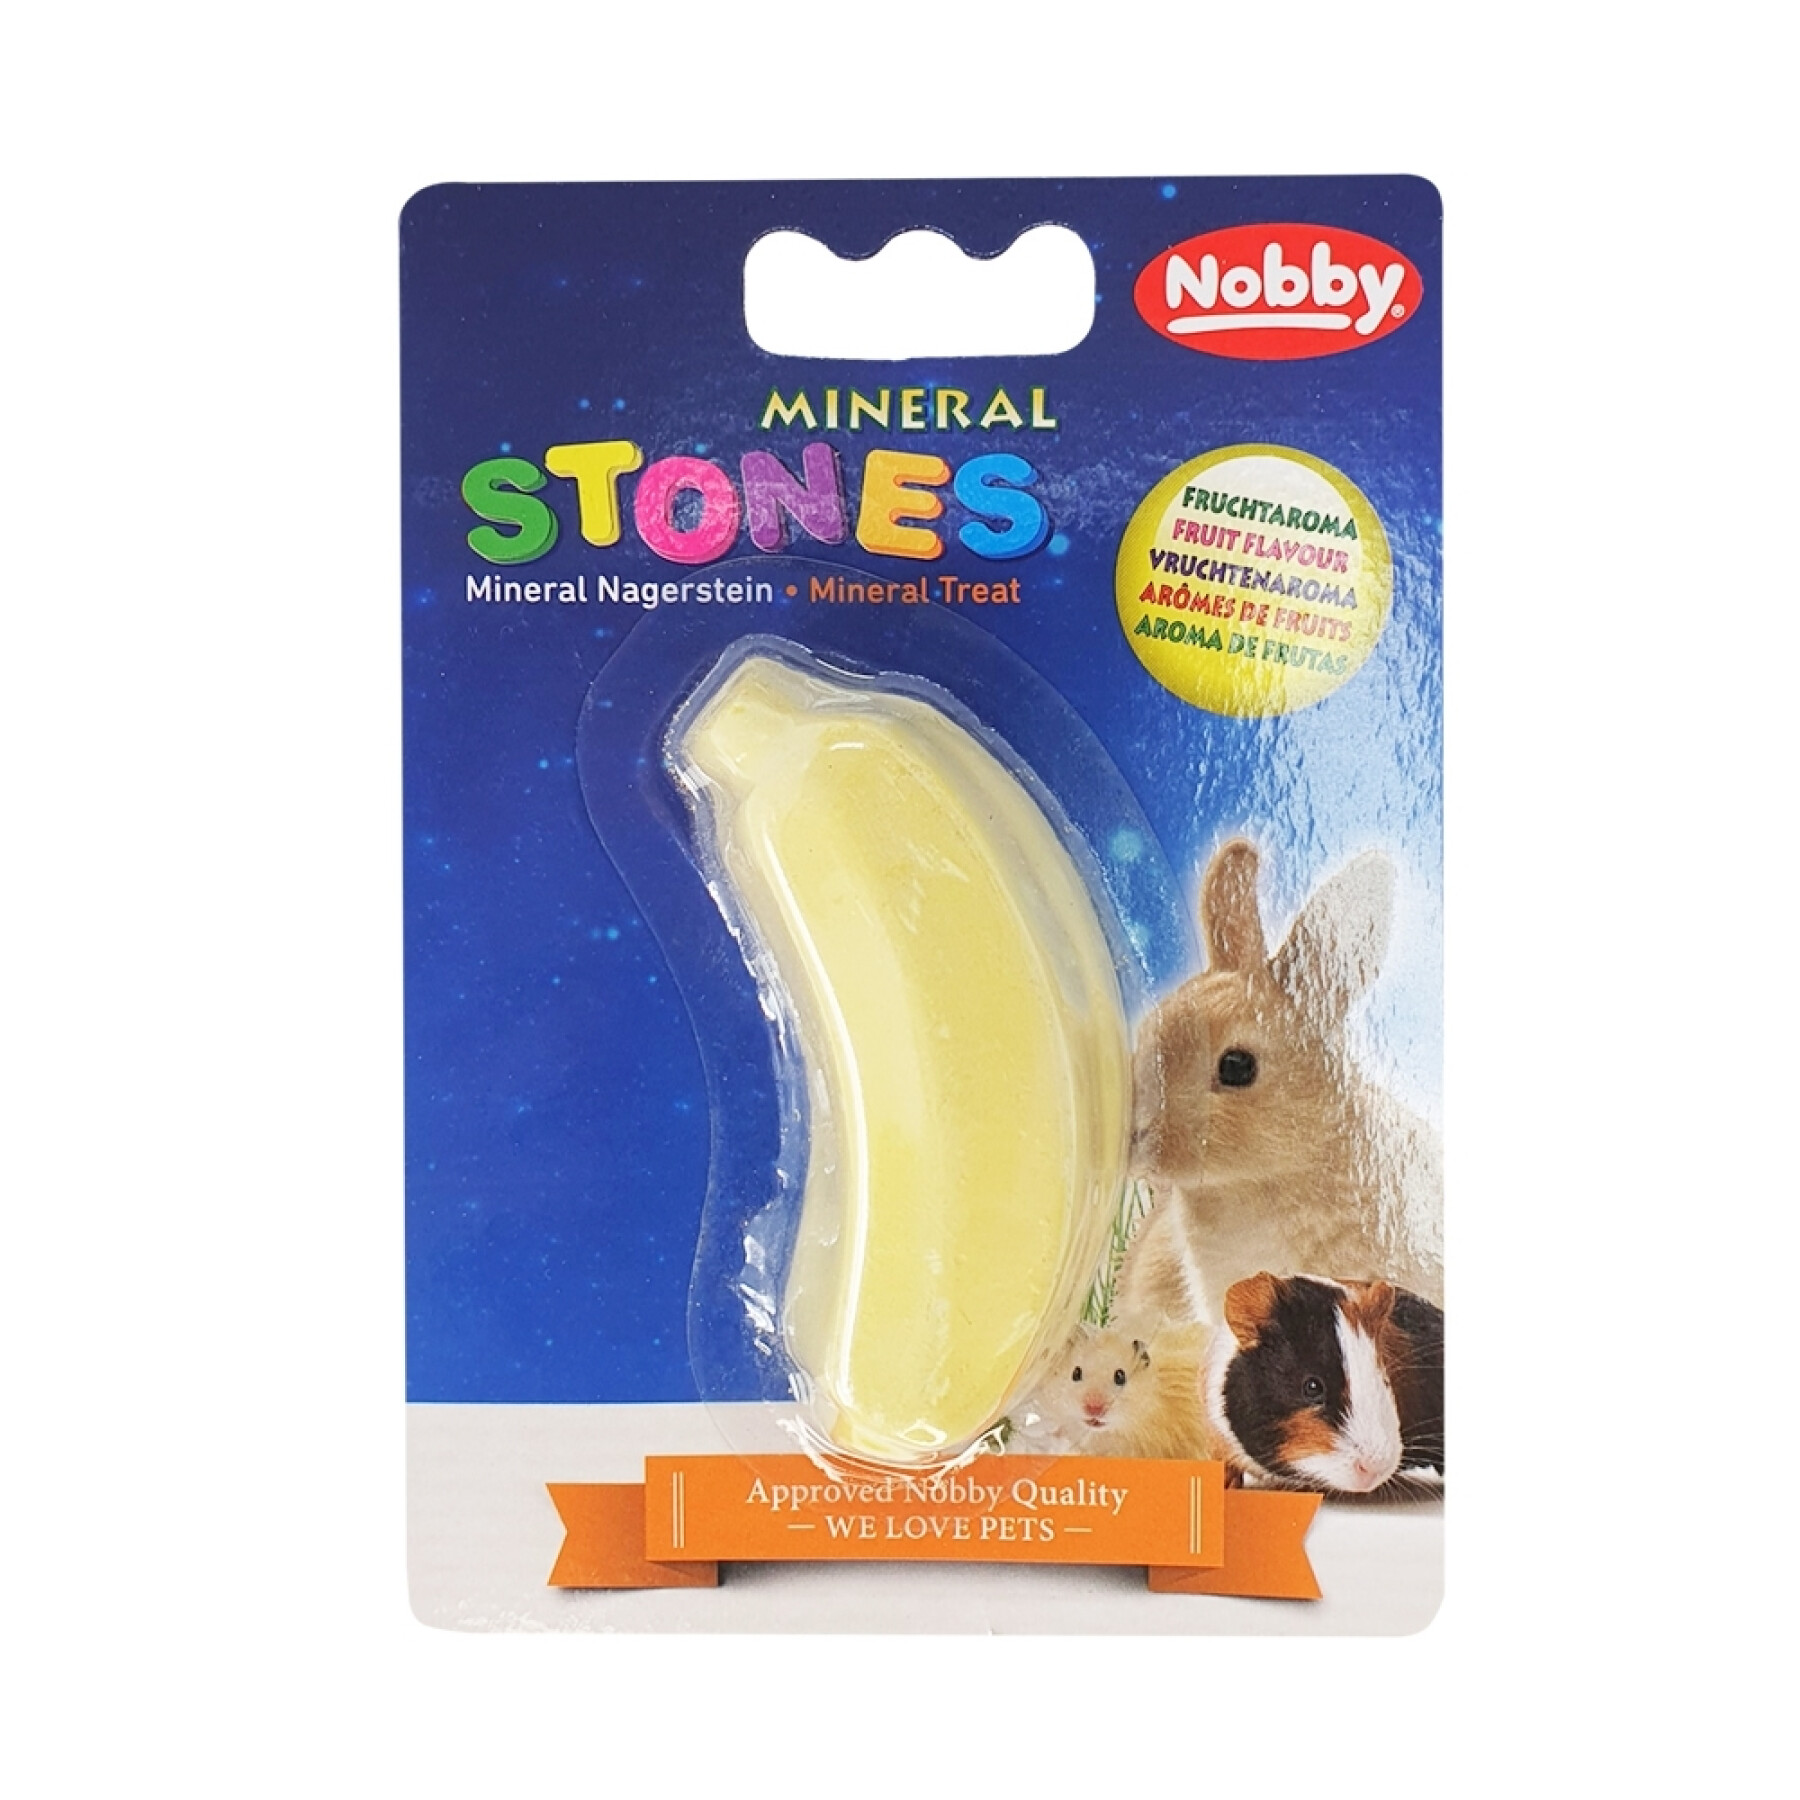 Banana mineral stone rodent treats Nobby Pet 30 g